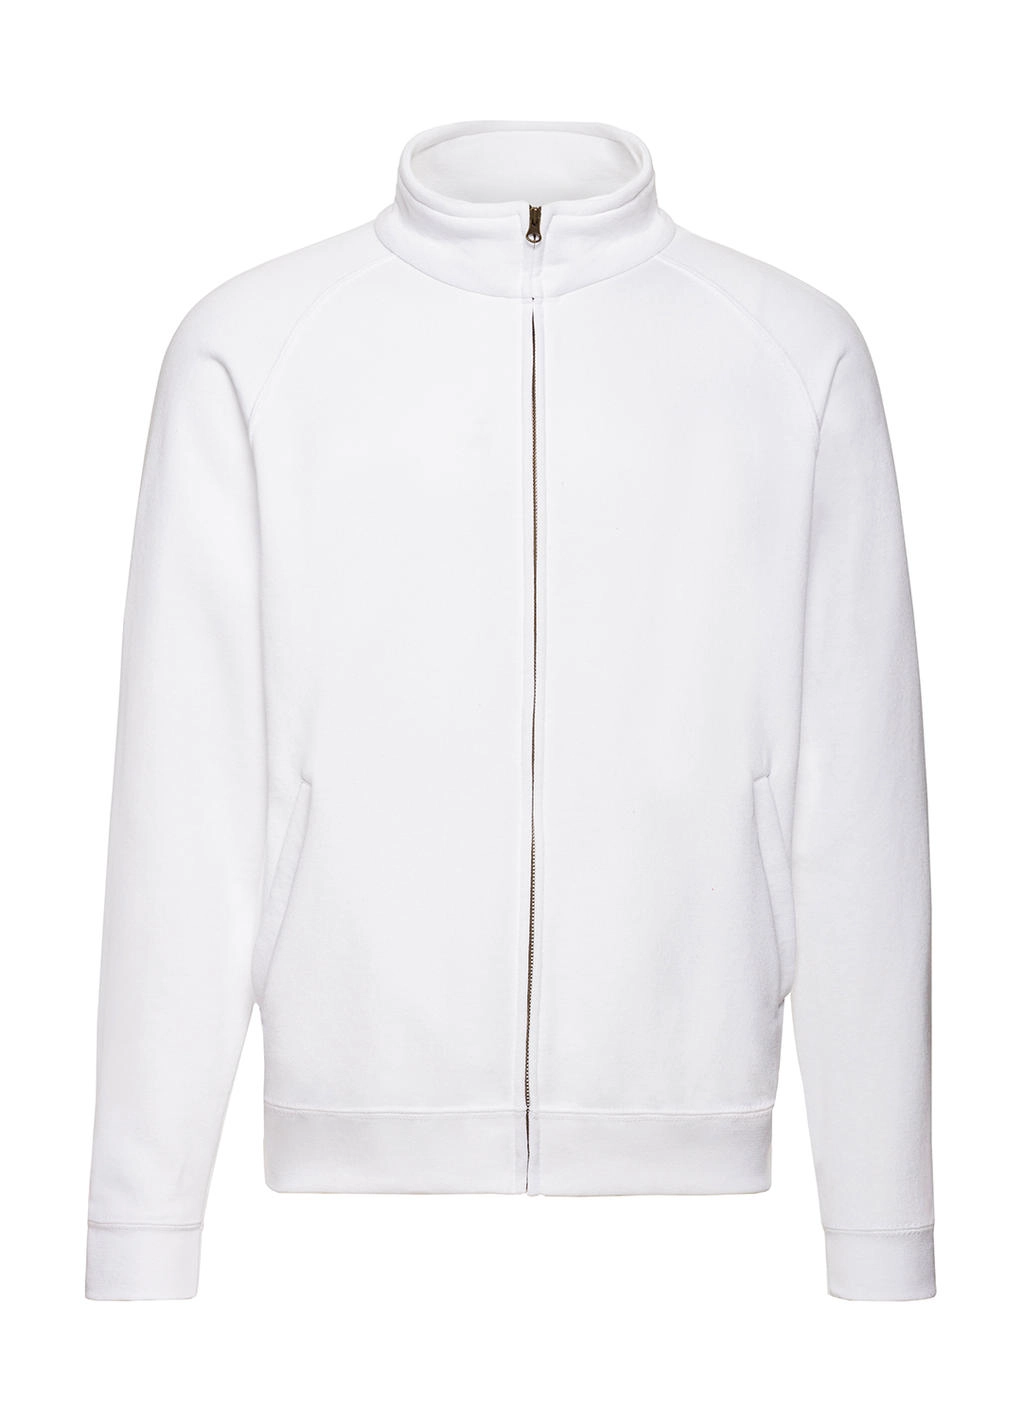 Classic Sweat Jacket zum Besticken und Bedrucken in der Farbe White mit Ihren Logo, Schriftzug oder Motiv.